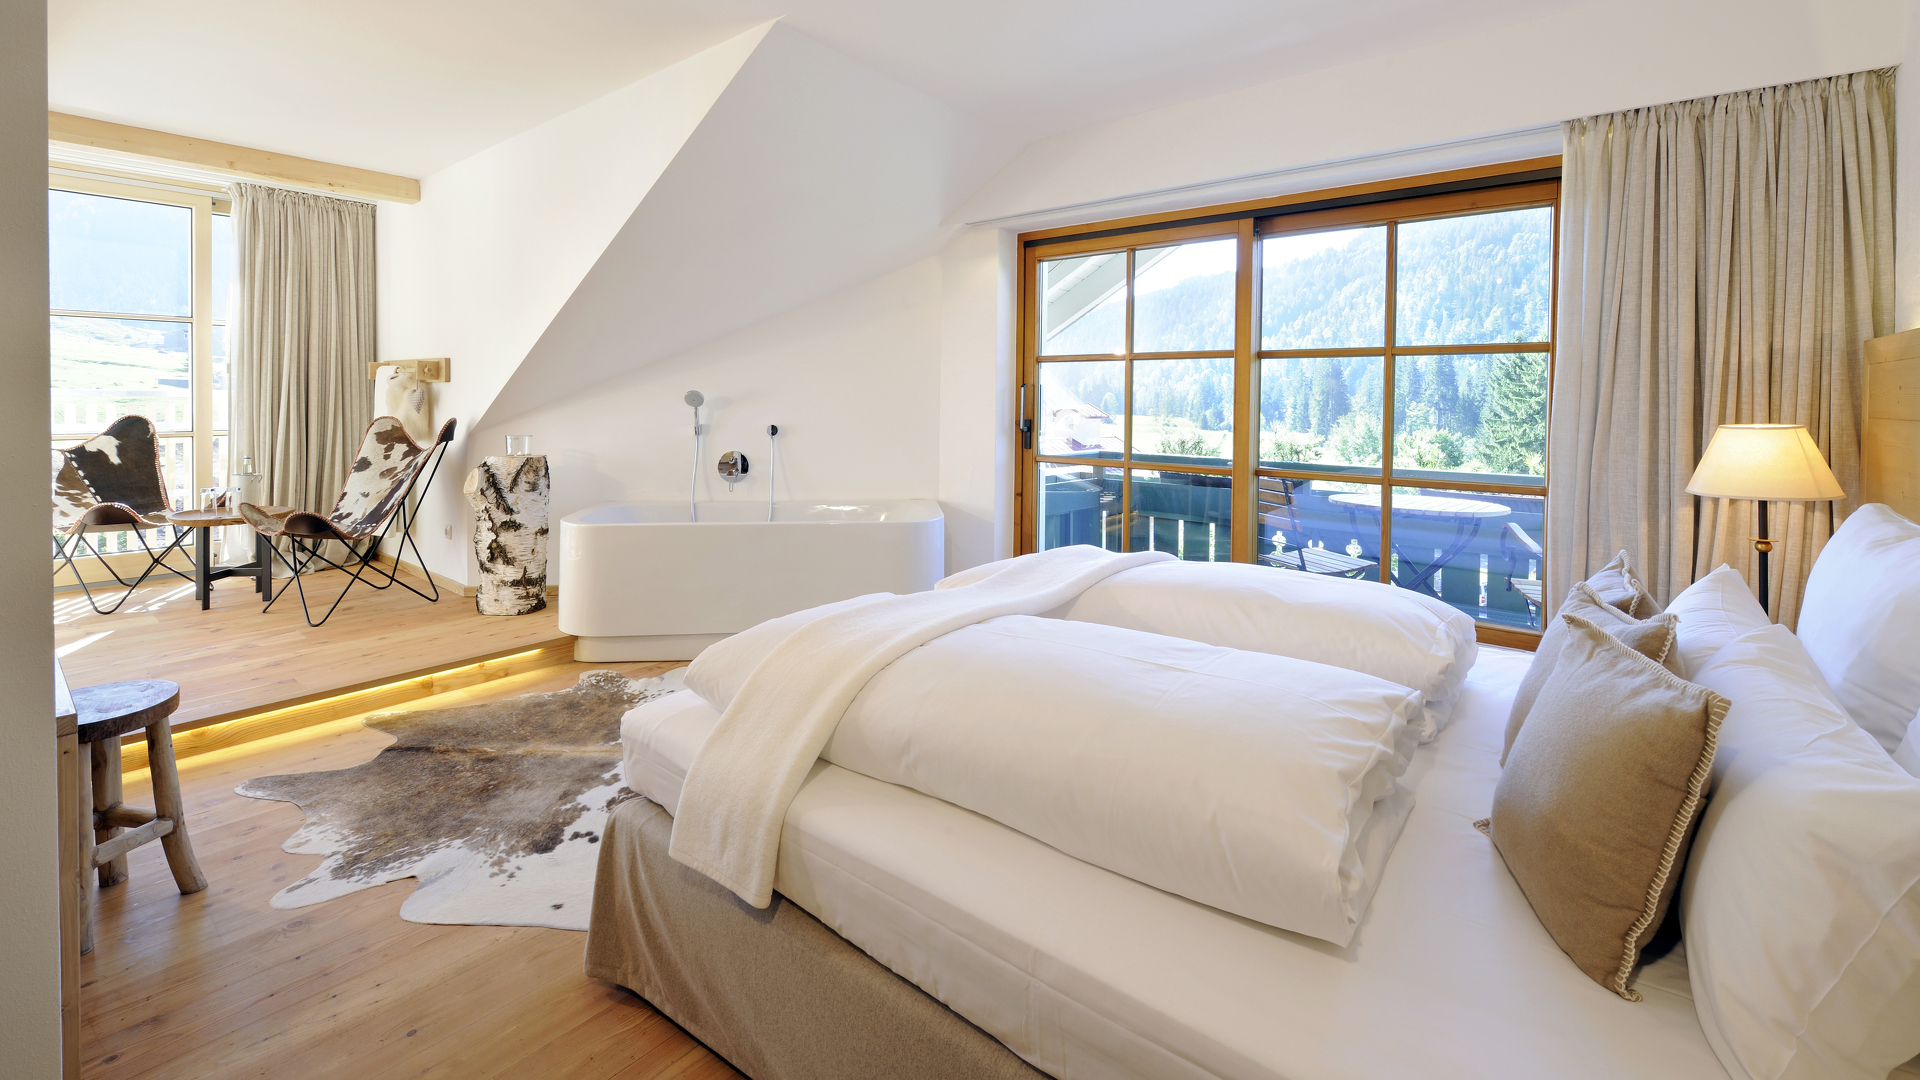 Wellnessurlaub im Allgäu mit eigener Badewanne und zwei Balkone.